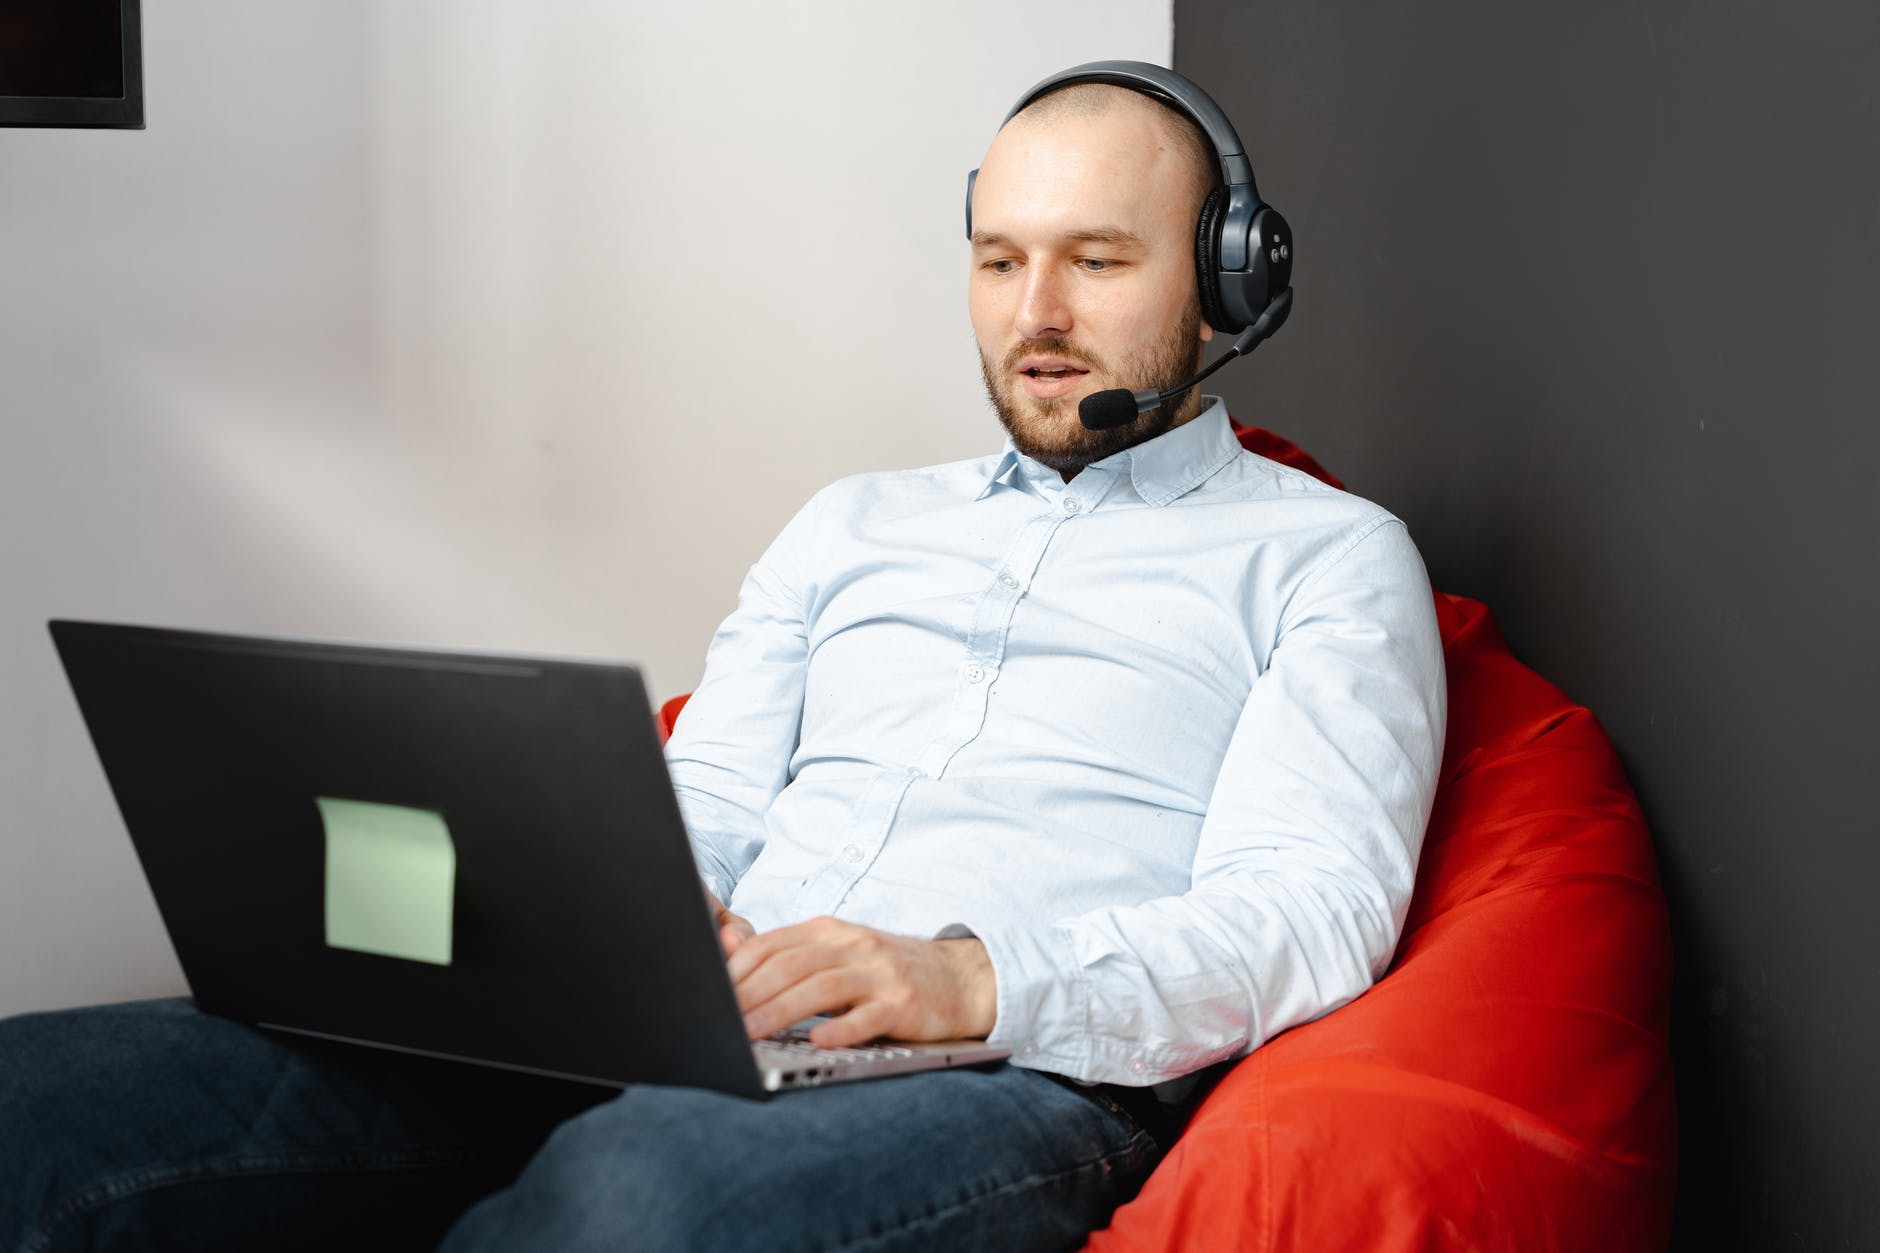 En la imagen aparece un hombre, que porta unos amplios auriculares, sentado en un puff y en cuyas piernas se encuentra un ordenador portátil que está utilizando